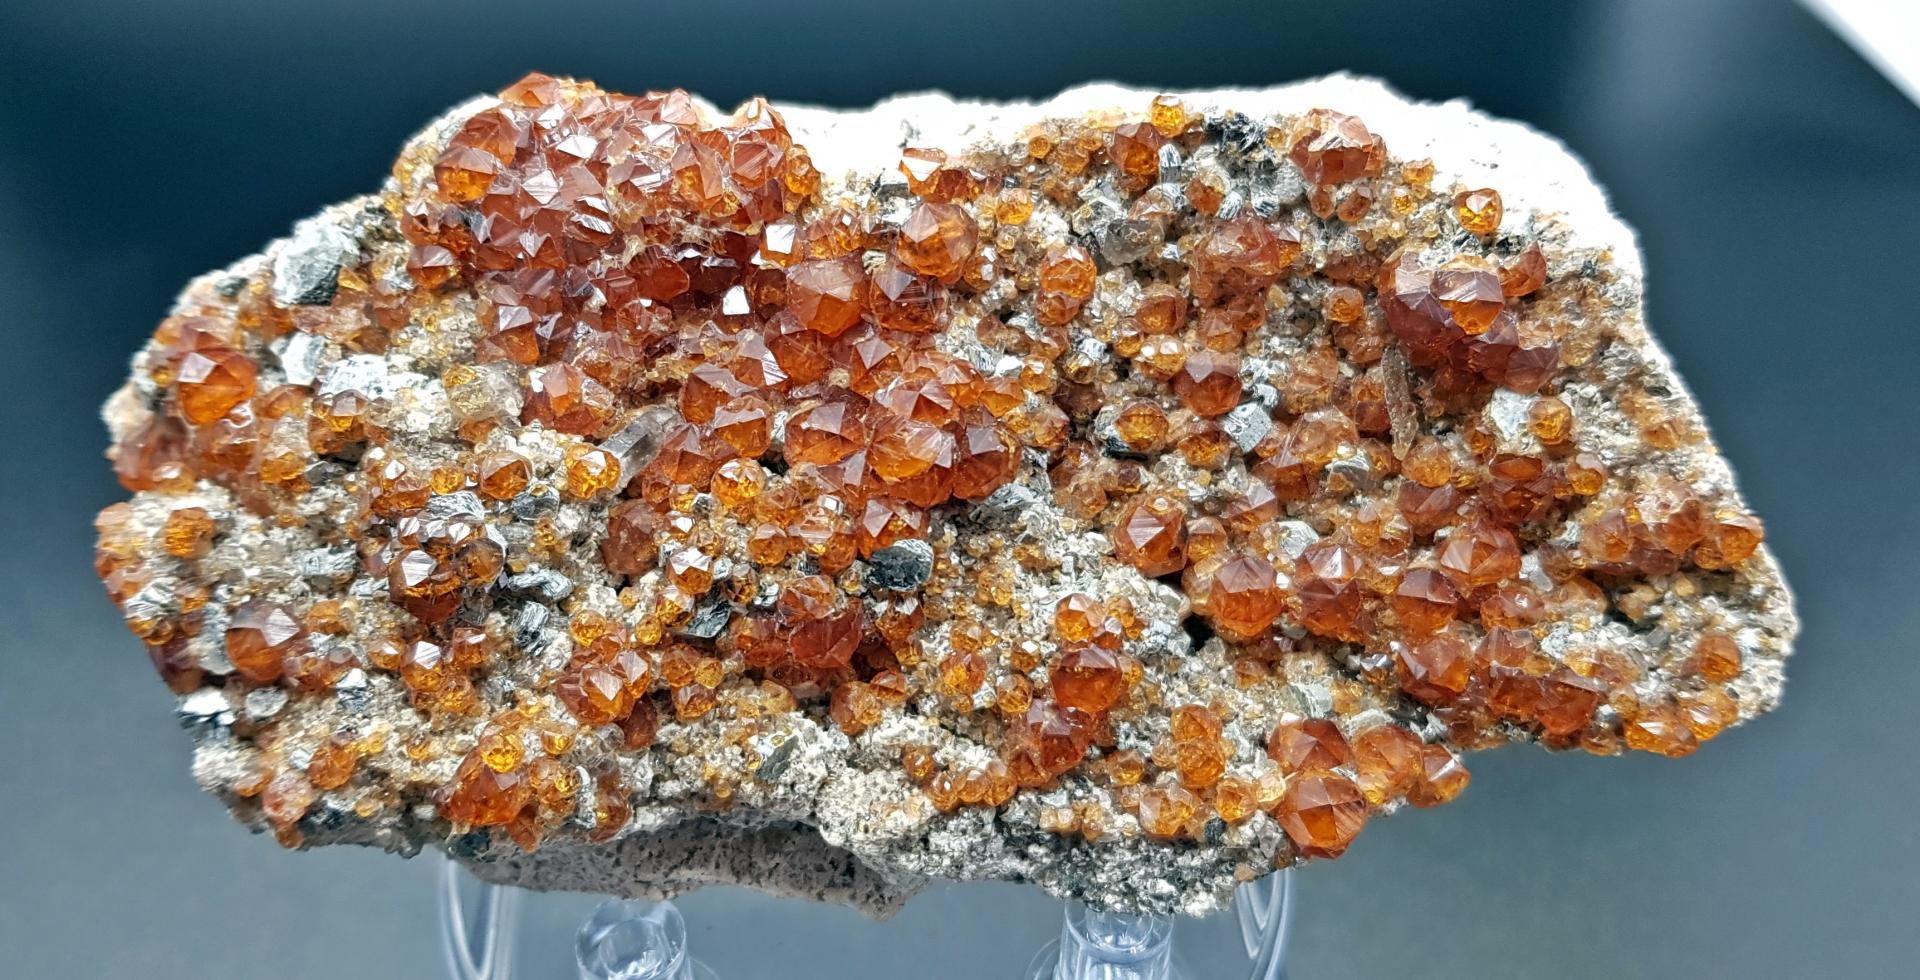 Granate Espesartina, Wushan, Tongbei, Fujian, China. Medidas: 12.5x6x3cm.